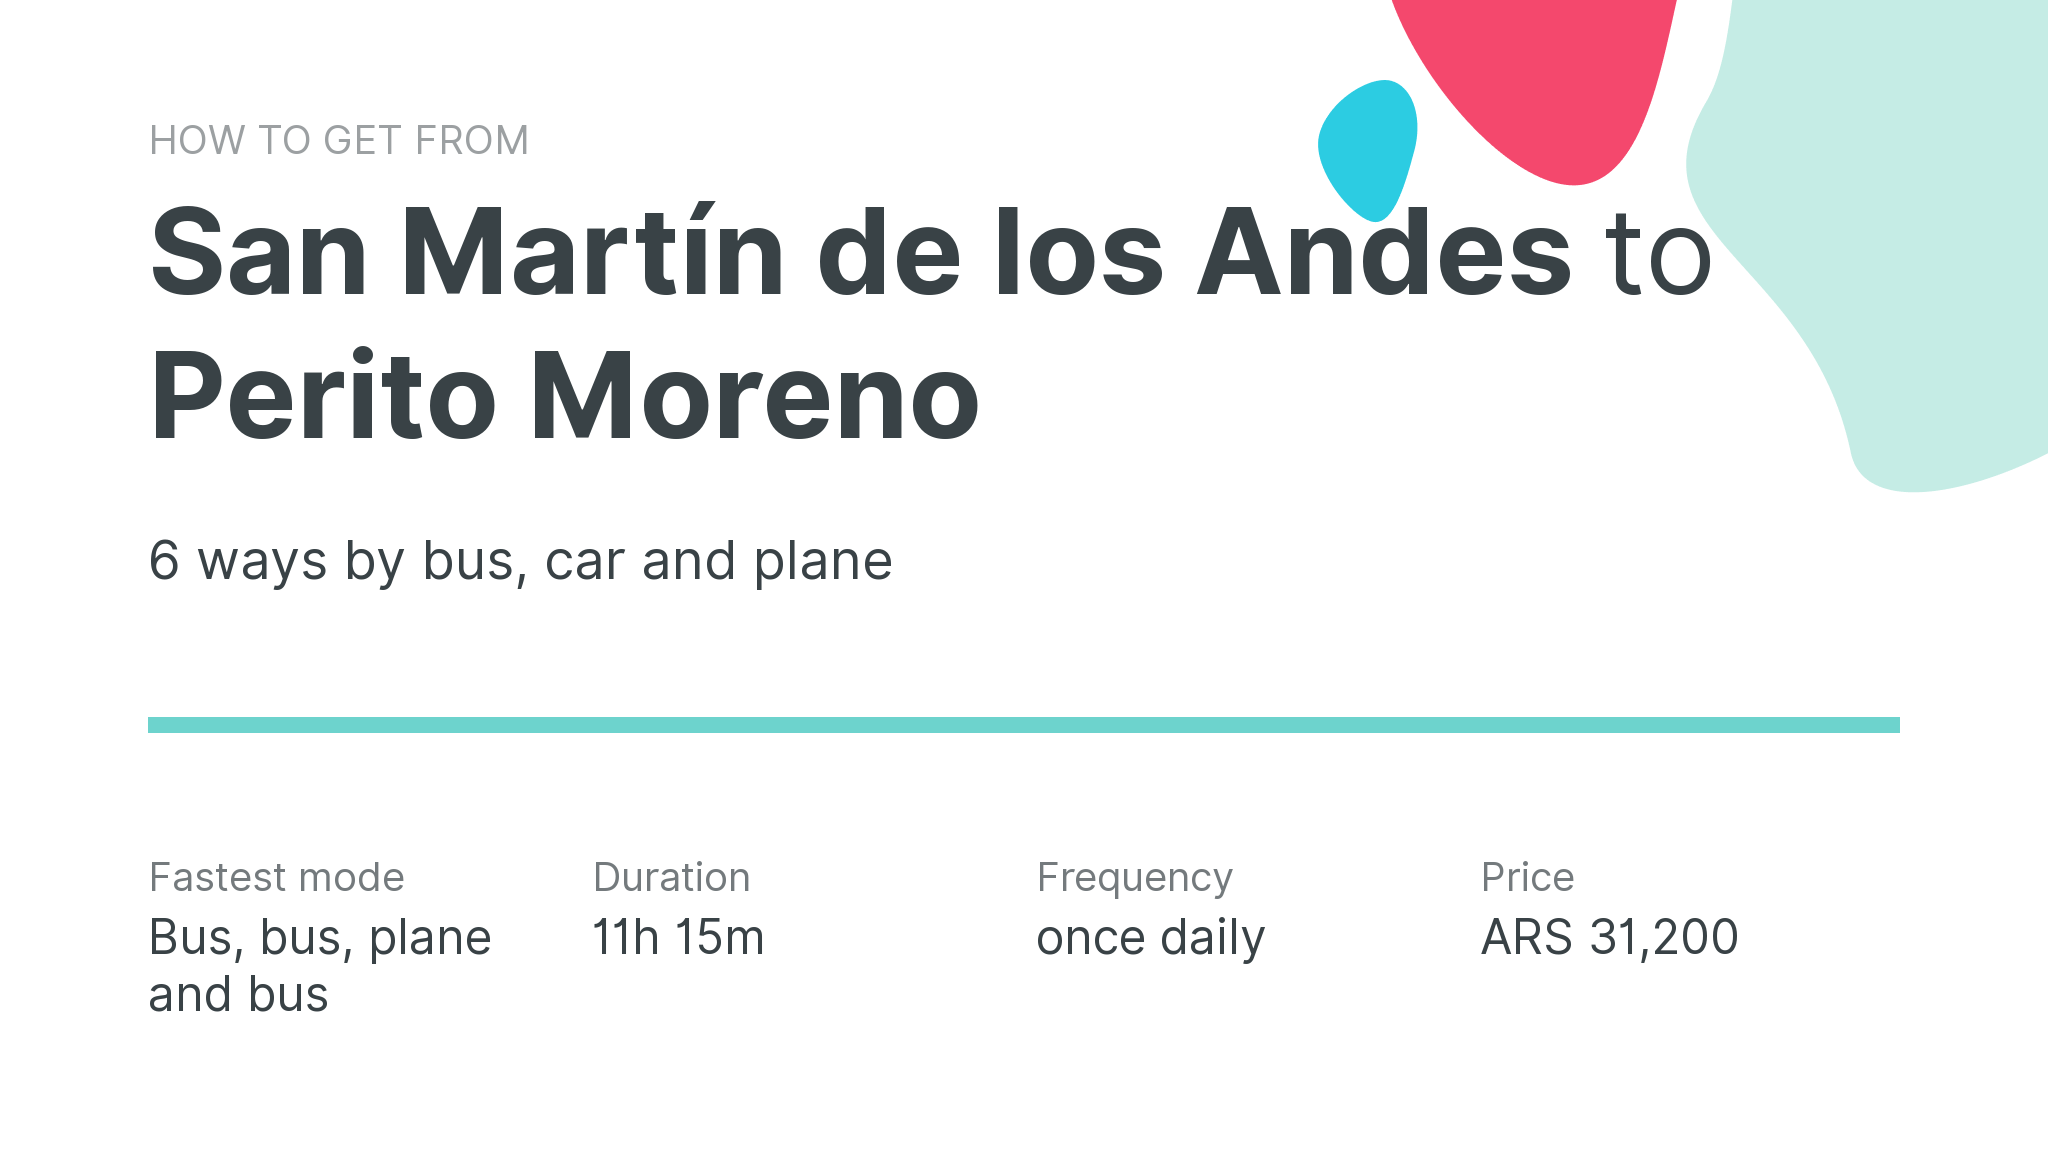 How do I get from San Martín de los Andes to Perito Moreno